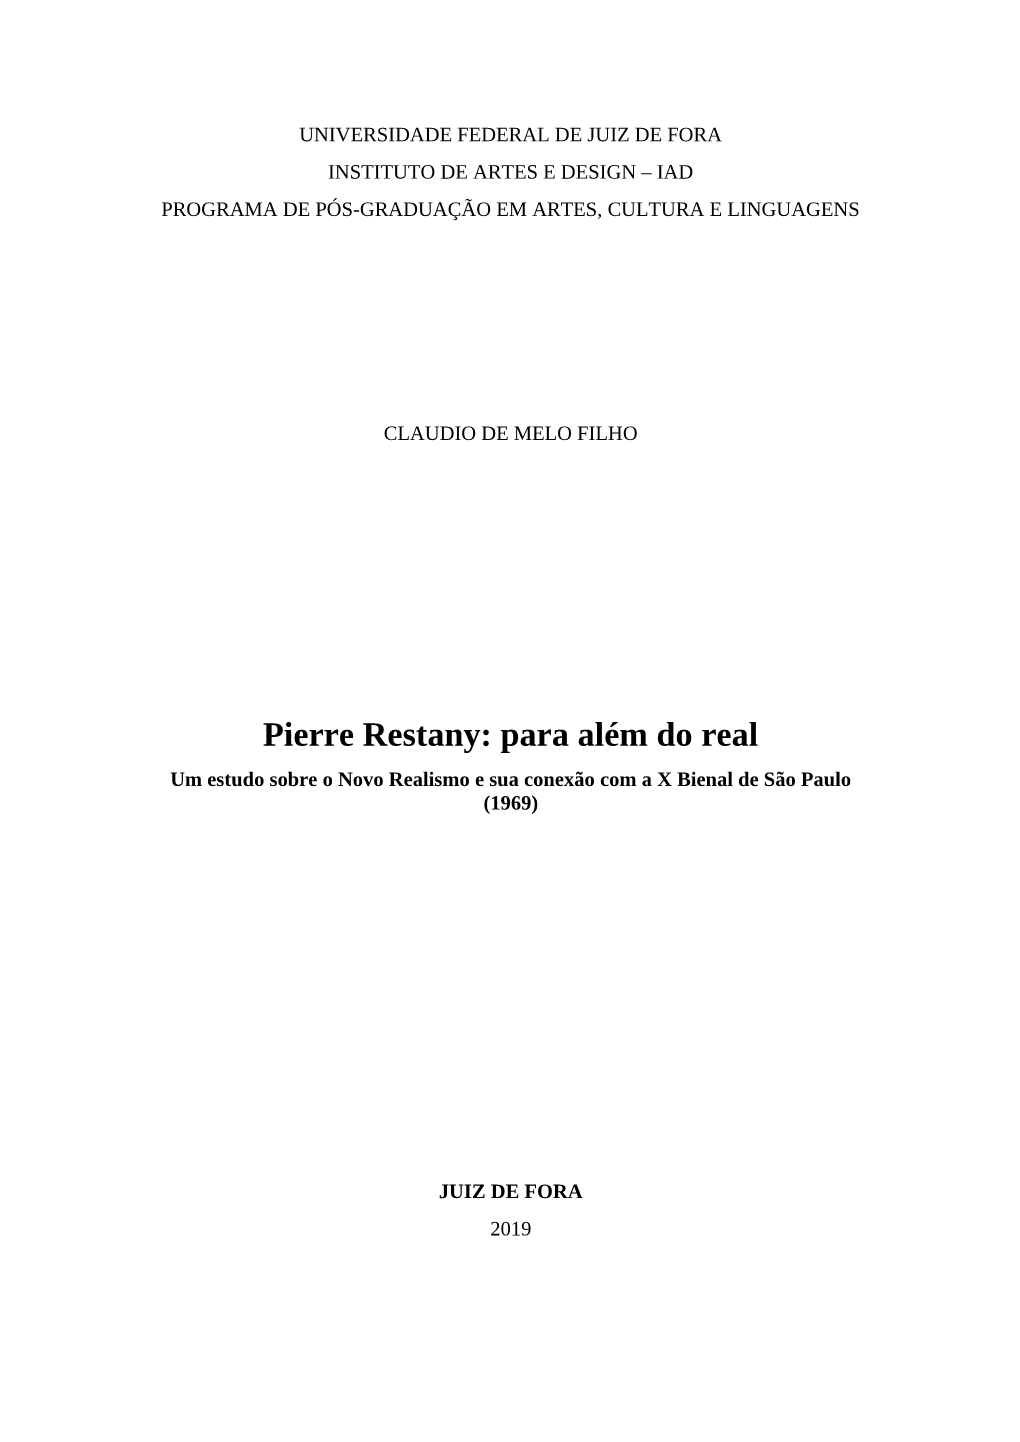 Pierre Restany: Para Além Do Real Um Estudo Sobre O Novo Realismo E Sua Conexão Com a X Bienal De São Paulo (1969)